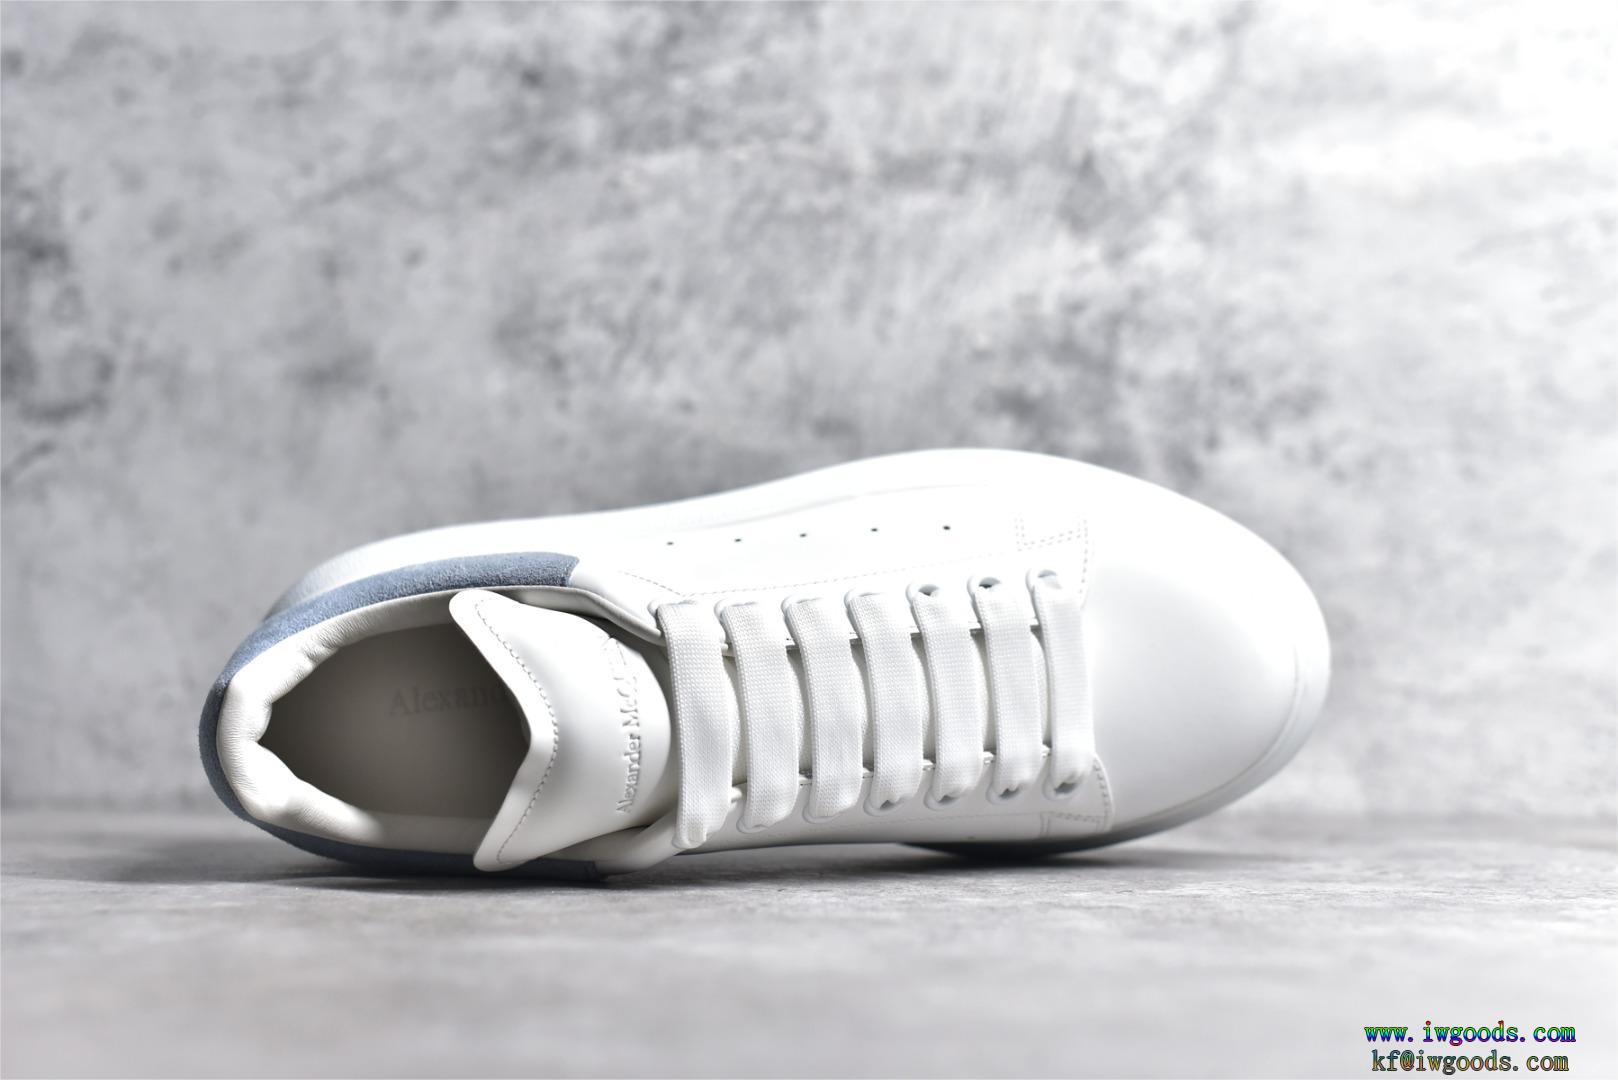 カジュアルシューズ スニーカー 板靴 白い靴暑い夏に軽やかな涼しげ好印象123%Alexander McQueen アレキサンダー・マックイーンブランド 品 コピー